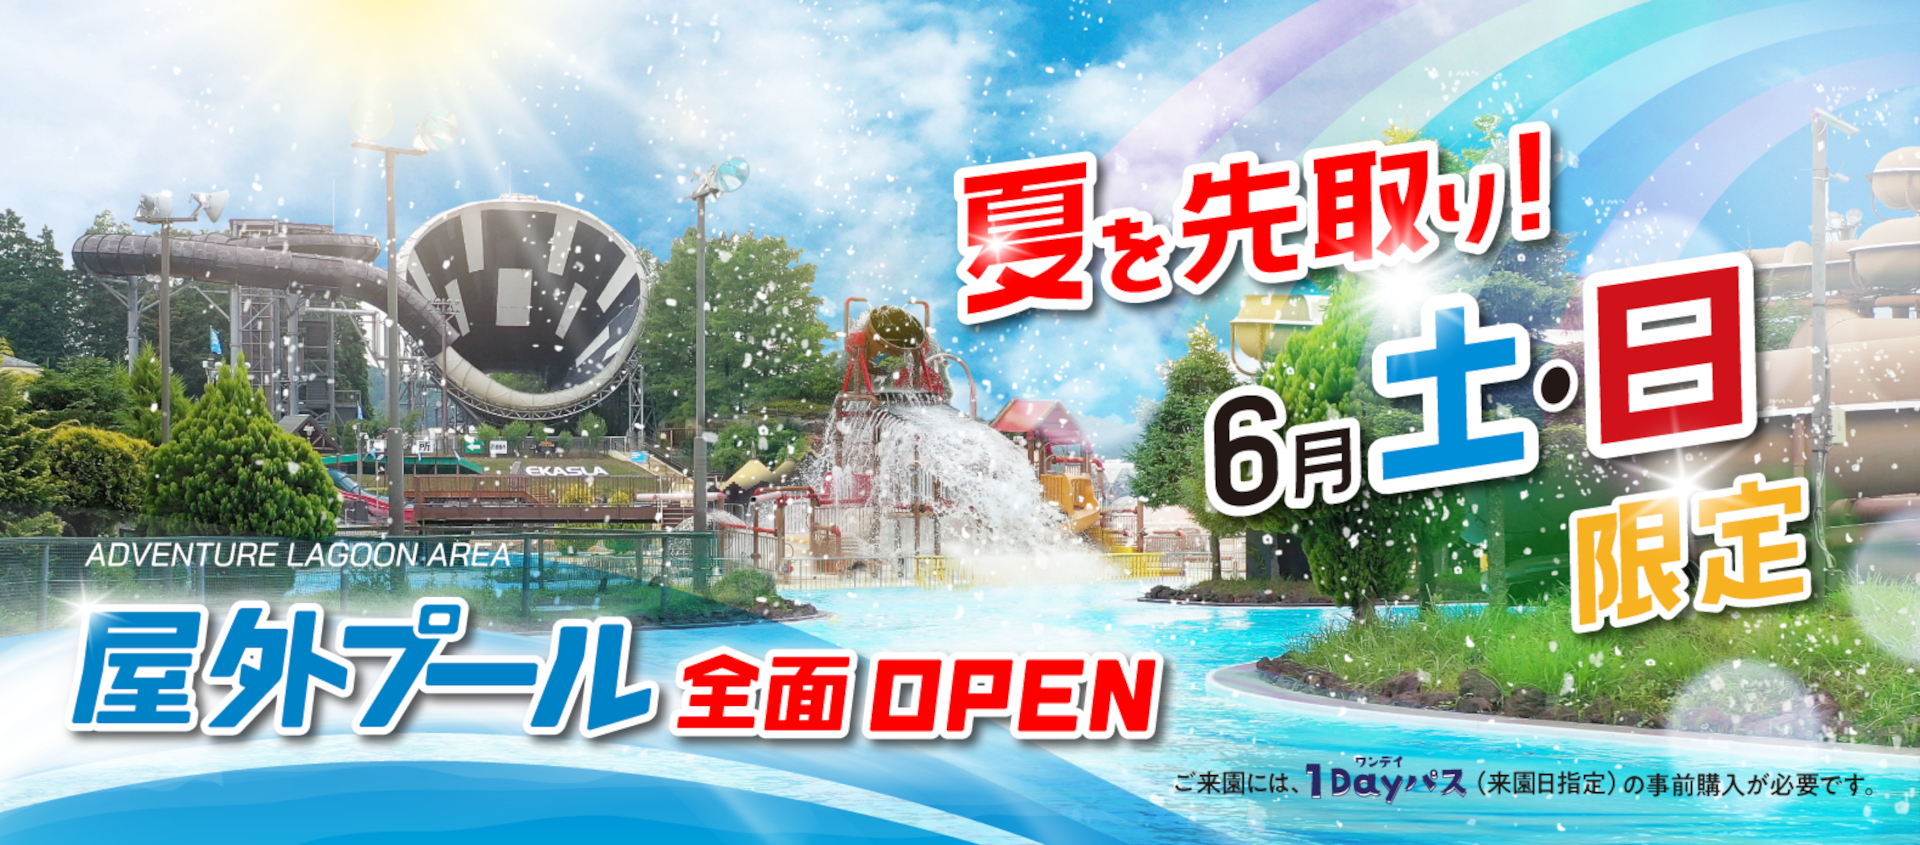 東京サマーランドの屋外プール、6月3日全面オープン。8本のウォーター